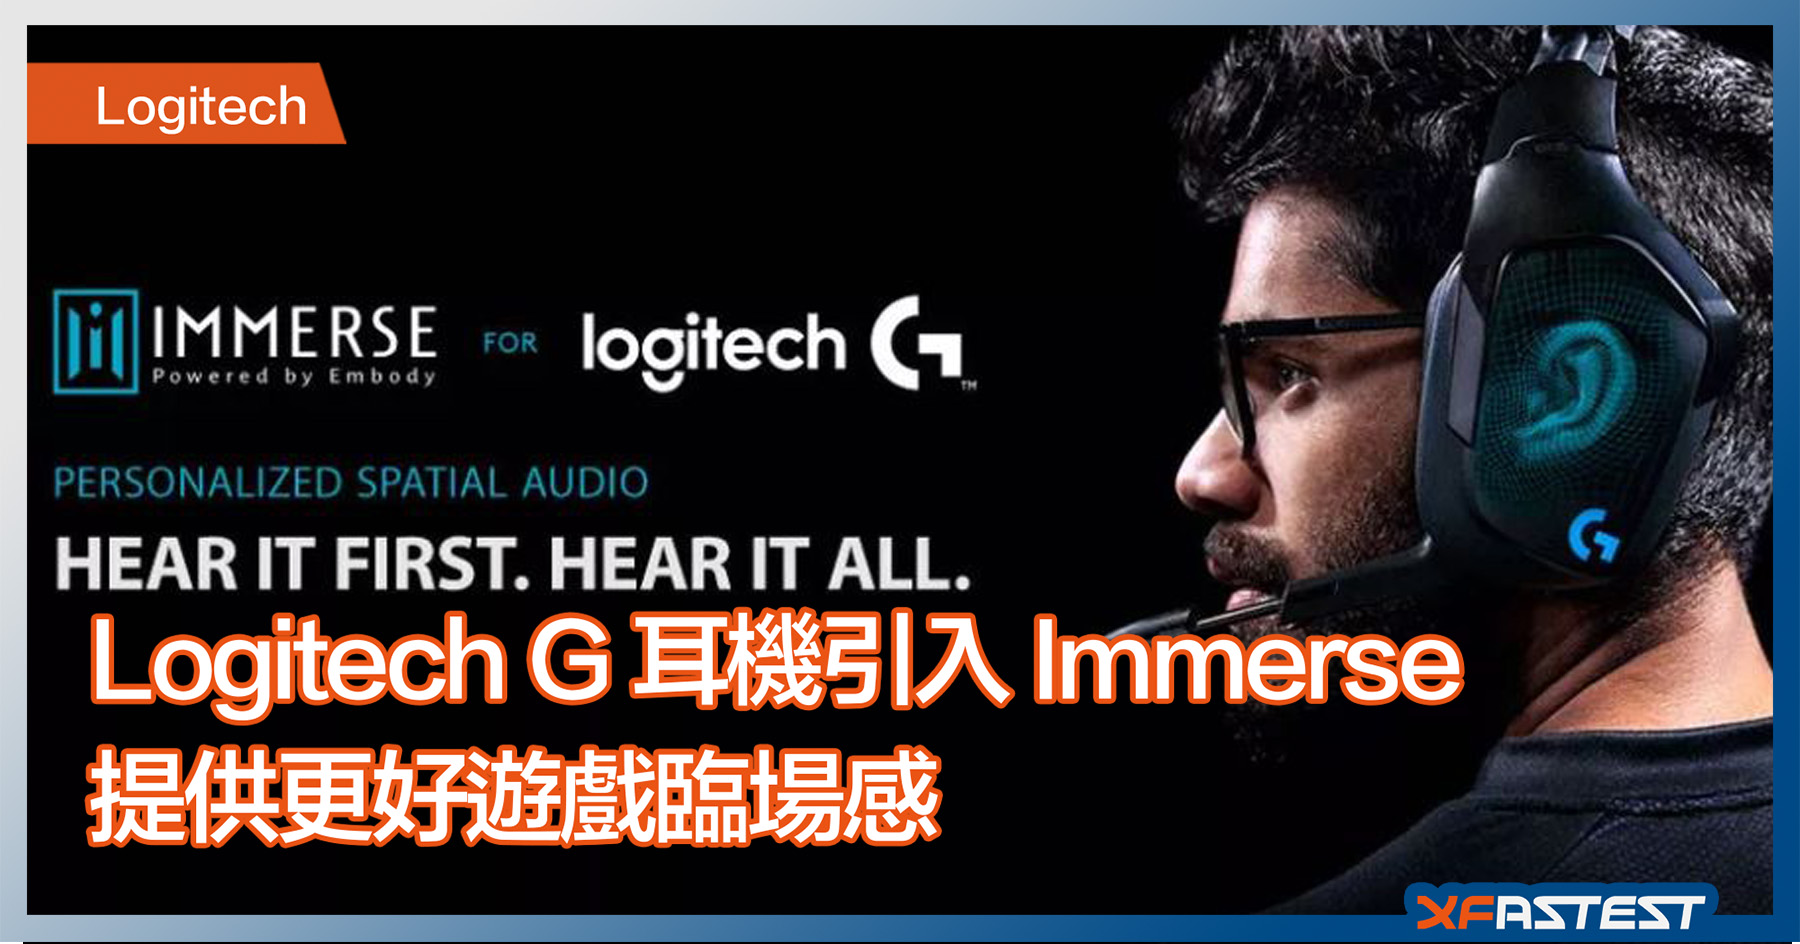 Voel me slecht Leeg de prullenbak Coöperatie Logitech G 耳機引入Immerse 收費服務提供更好遊戲臨場感- XFastest Hong Kong